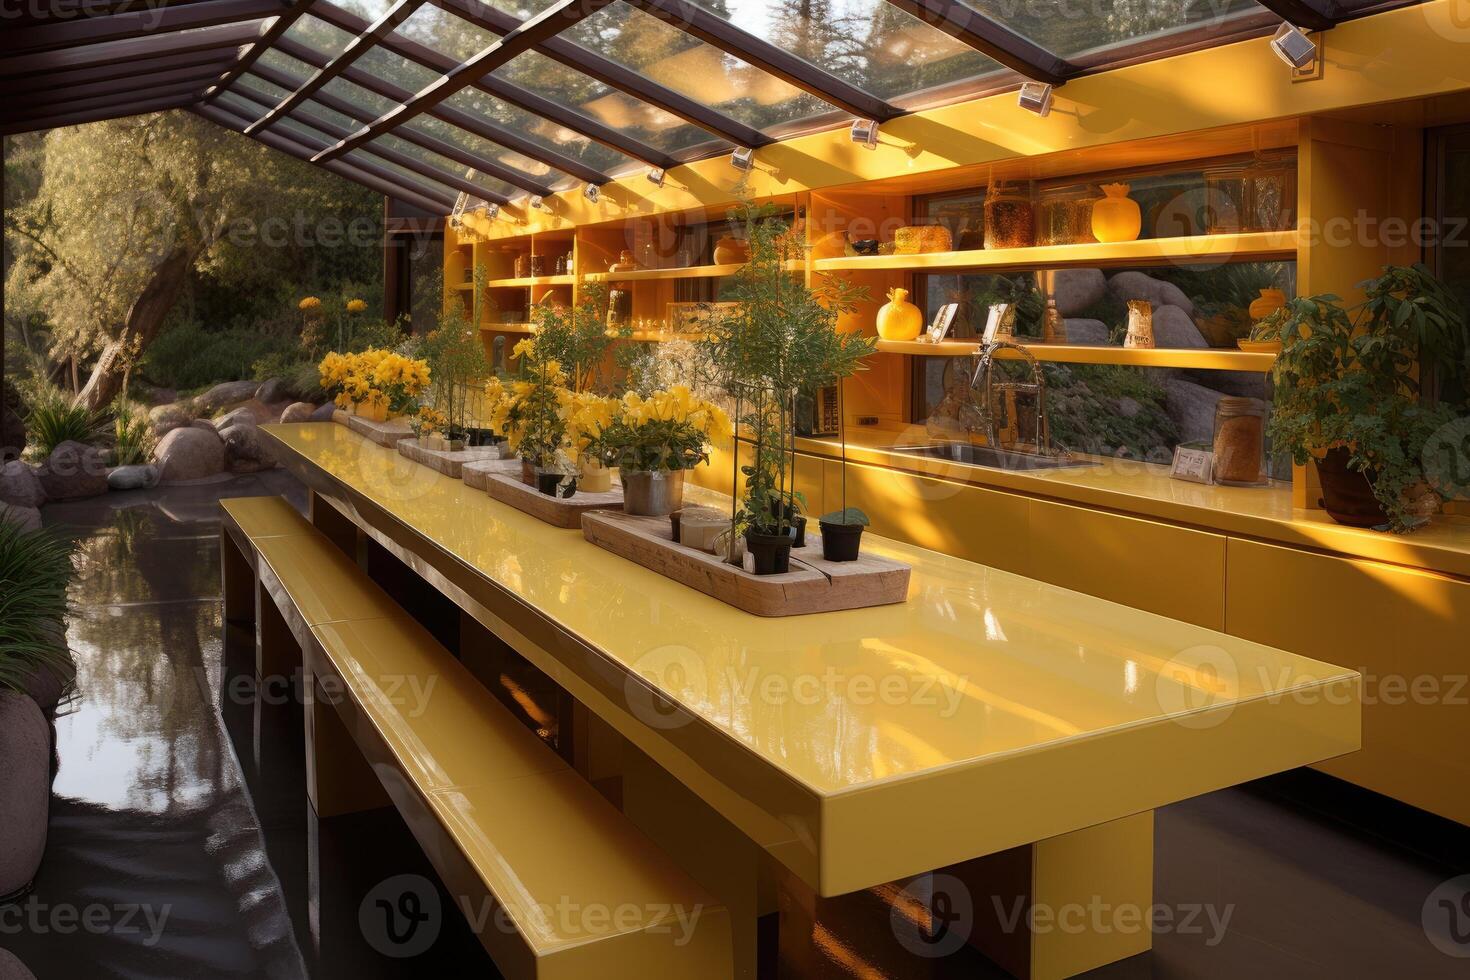 moderno amarillo cocina a hogar diseño ideas profesional publicidad fotografía foto